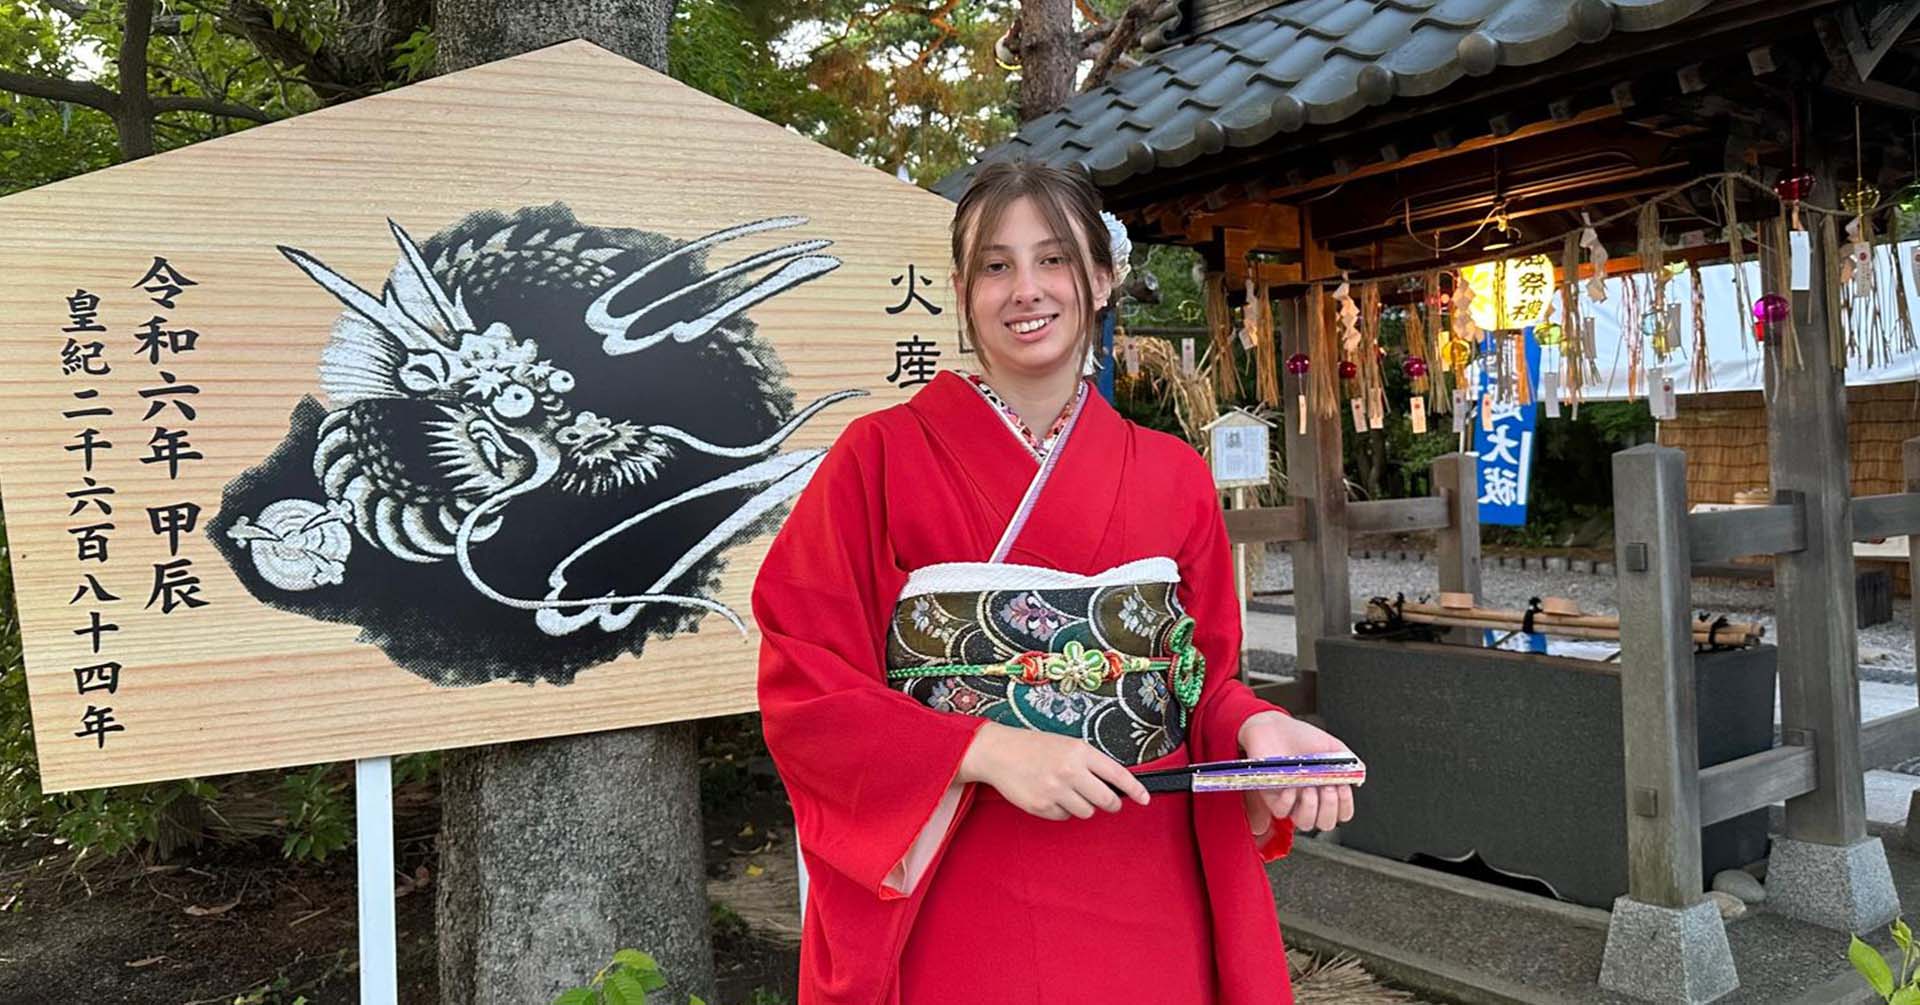 Benedetta, un anno in Giappone per realizzare un sogno